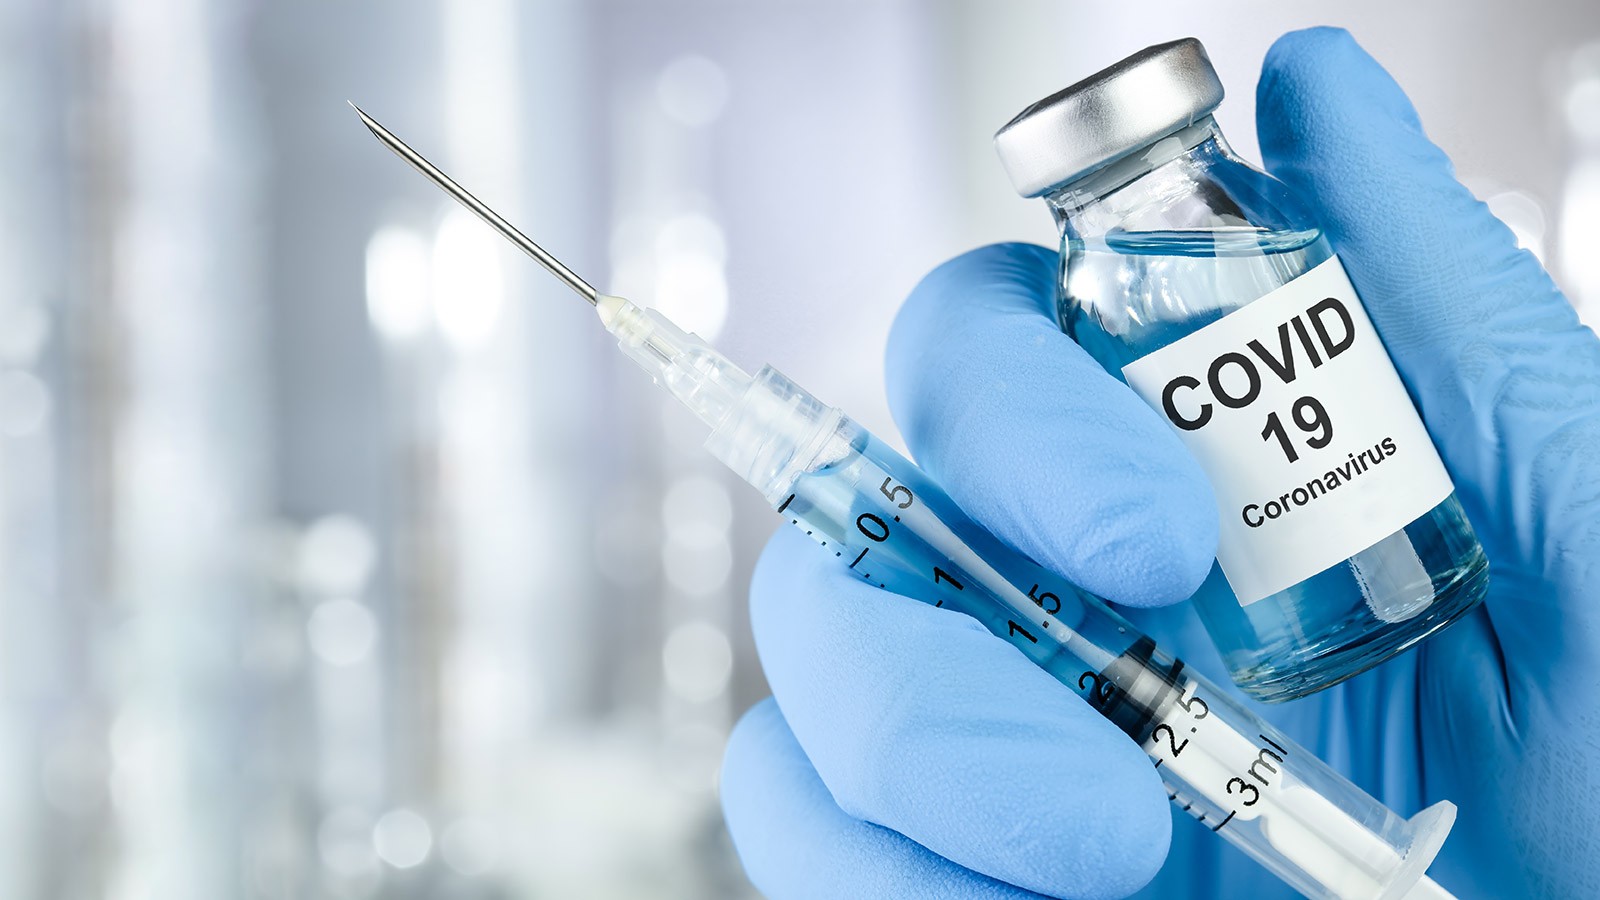 EEUU autoriza vacuna de Johnson & Johnson contra covid-19 para uso de emergencia